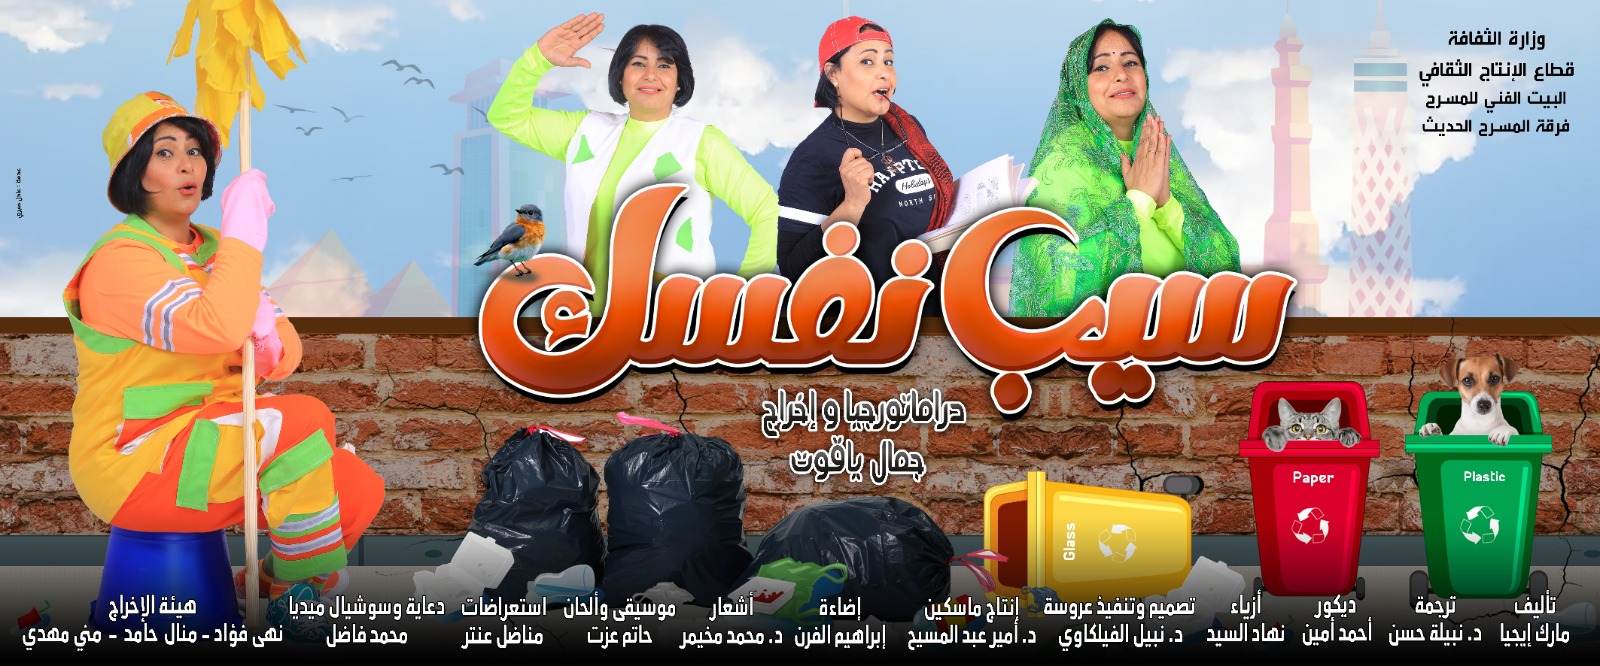 العرض المصري "سيب نفسك" ضمن فعاليات "القاهرة للمونودراما"